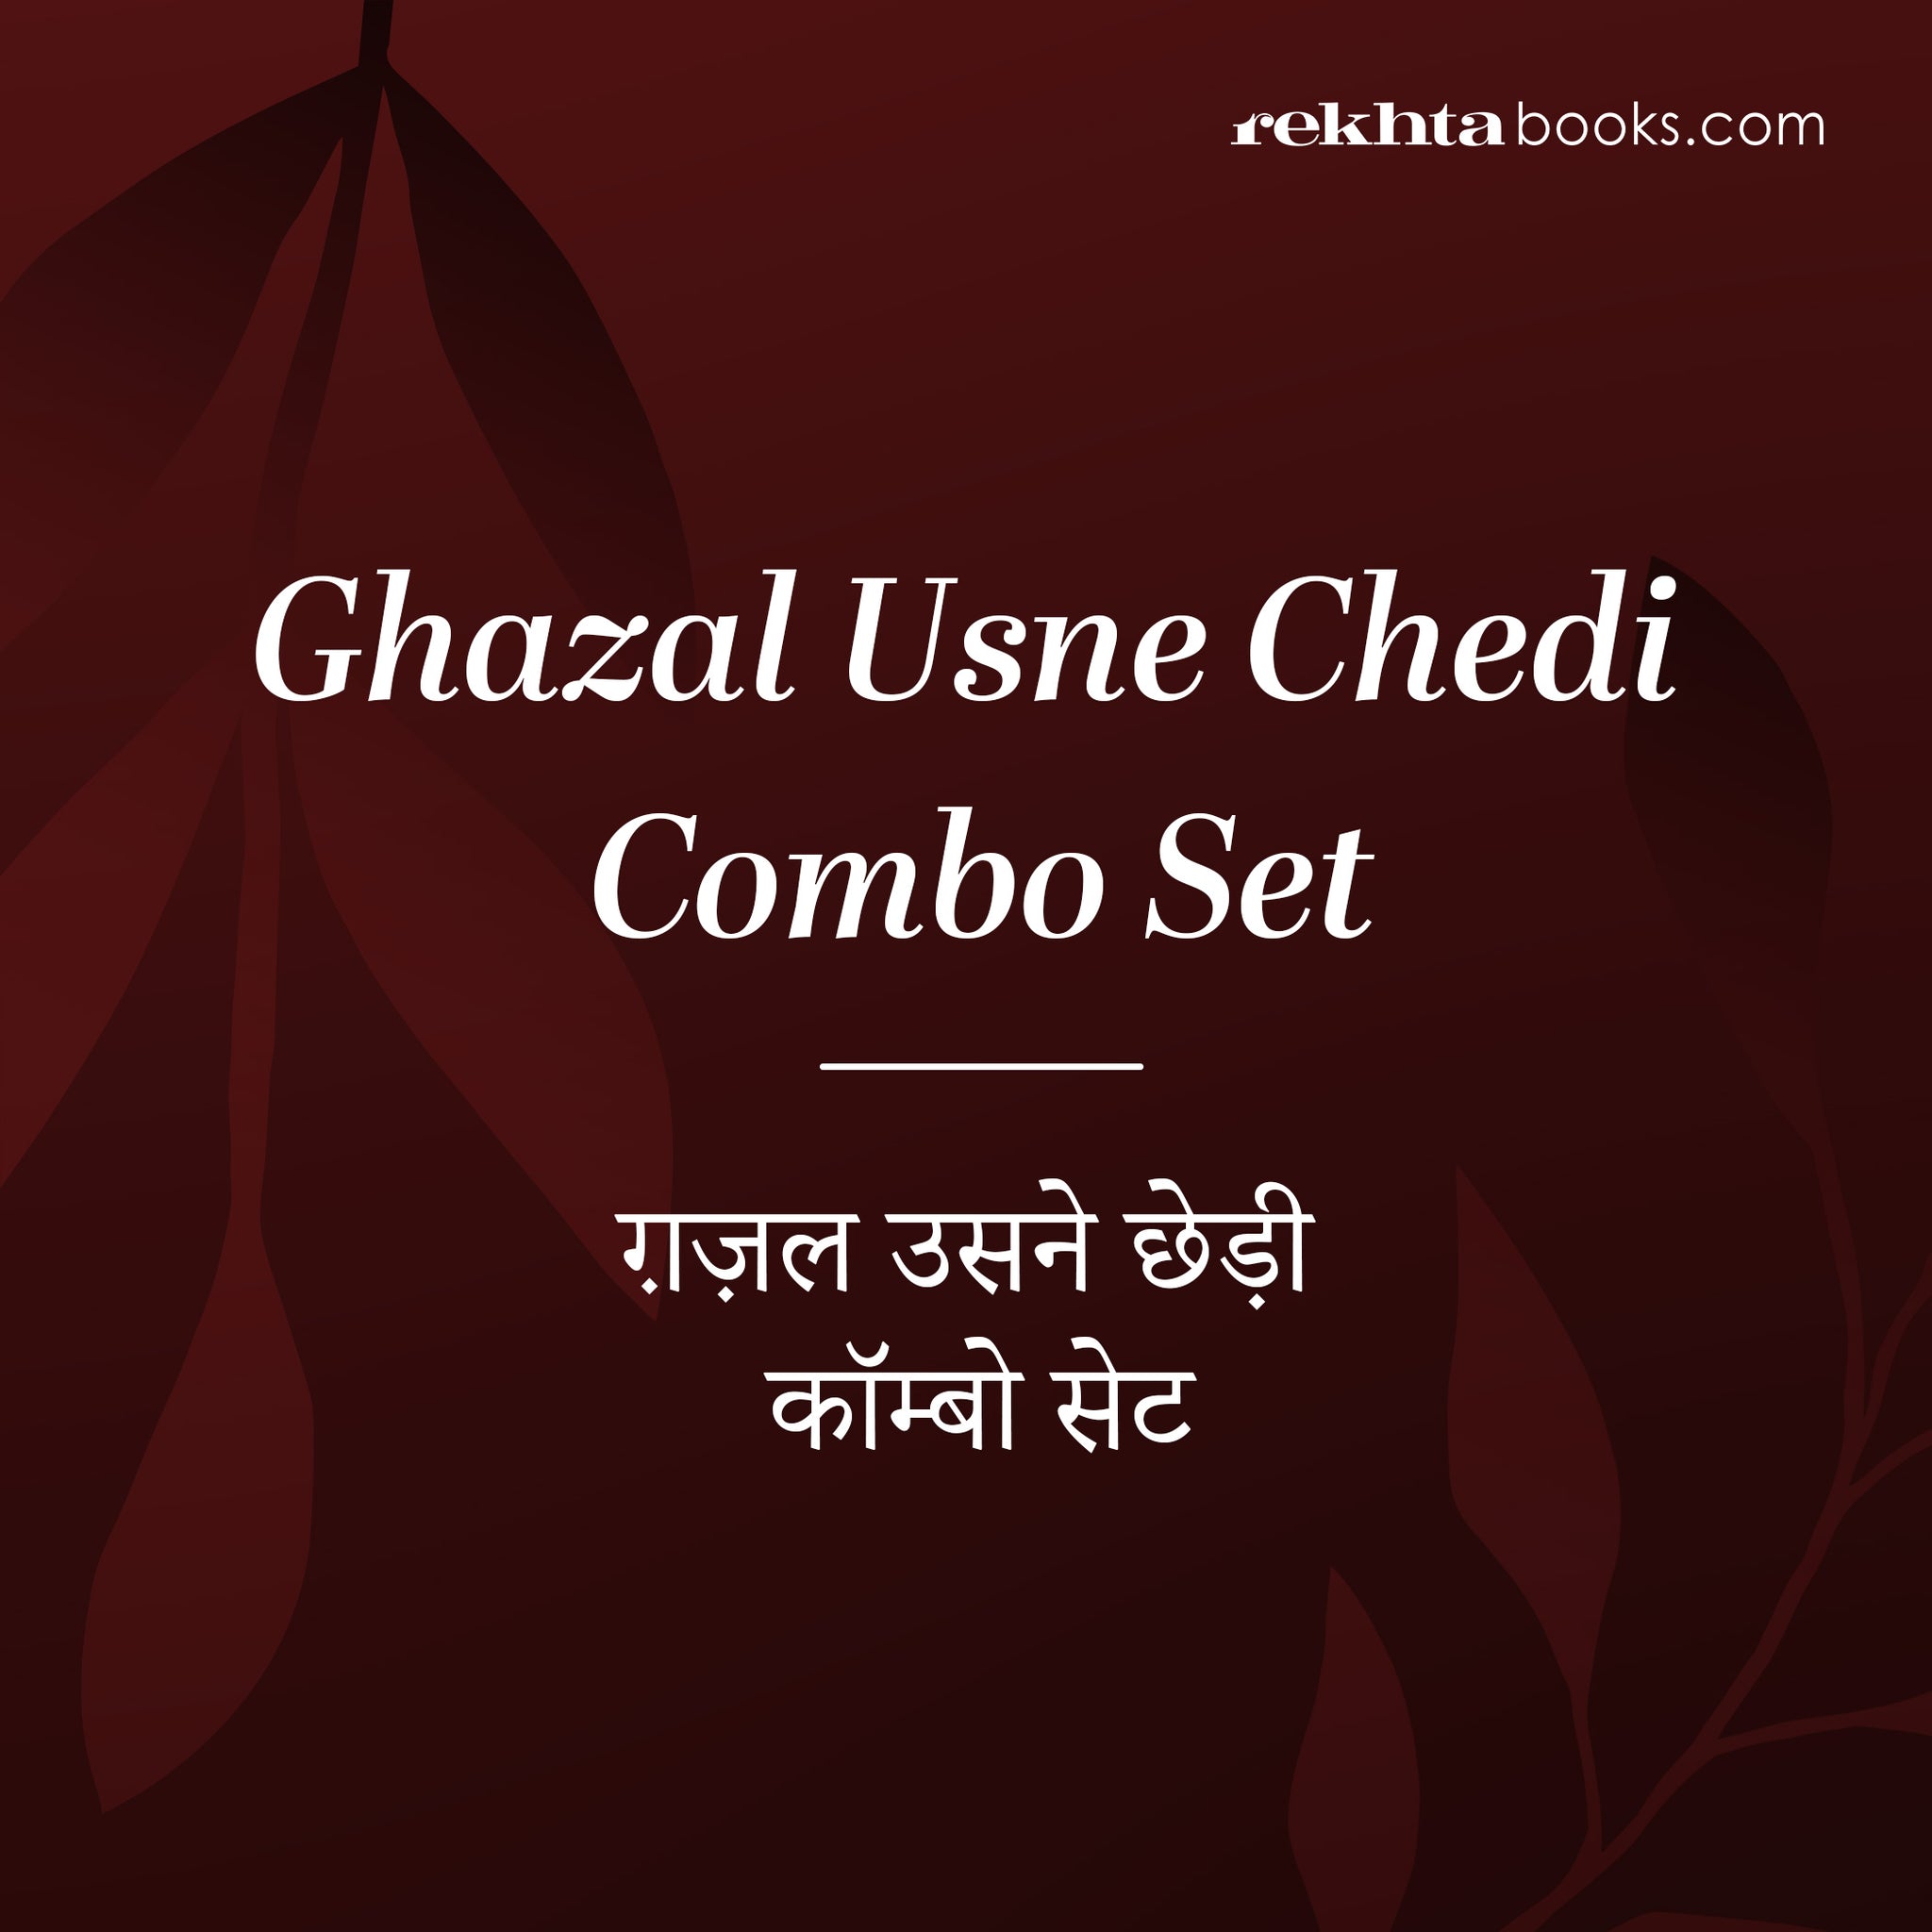 Books in 'Ghazal Usne Chhedi' Series